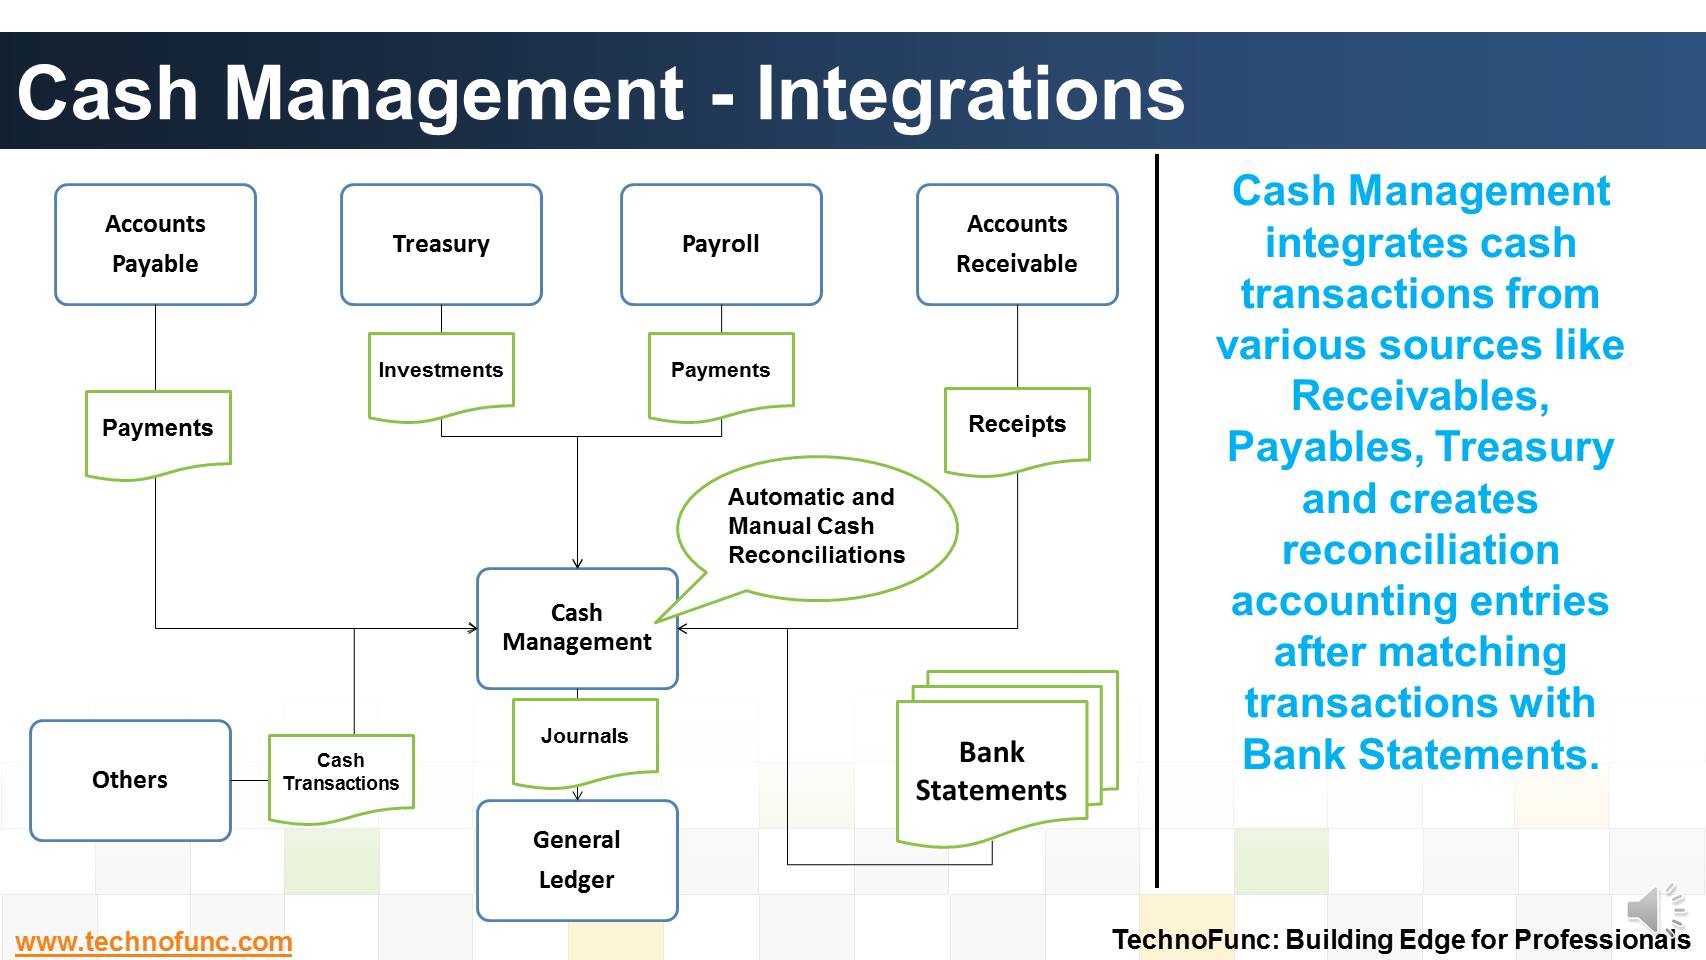 Cash Management - Integrations